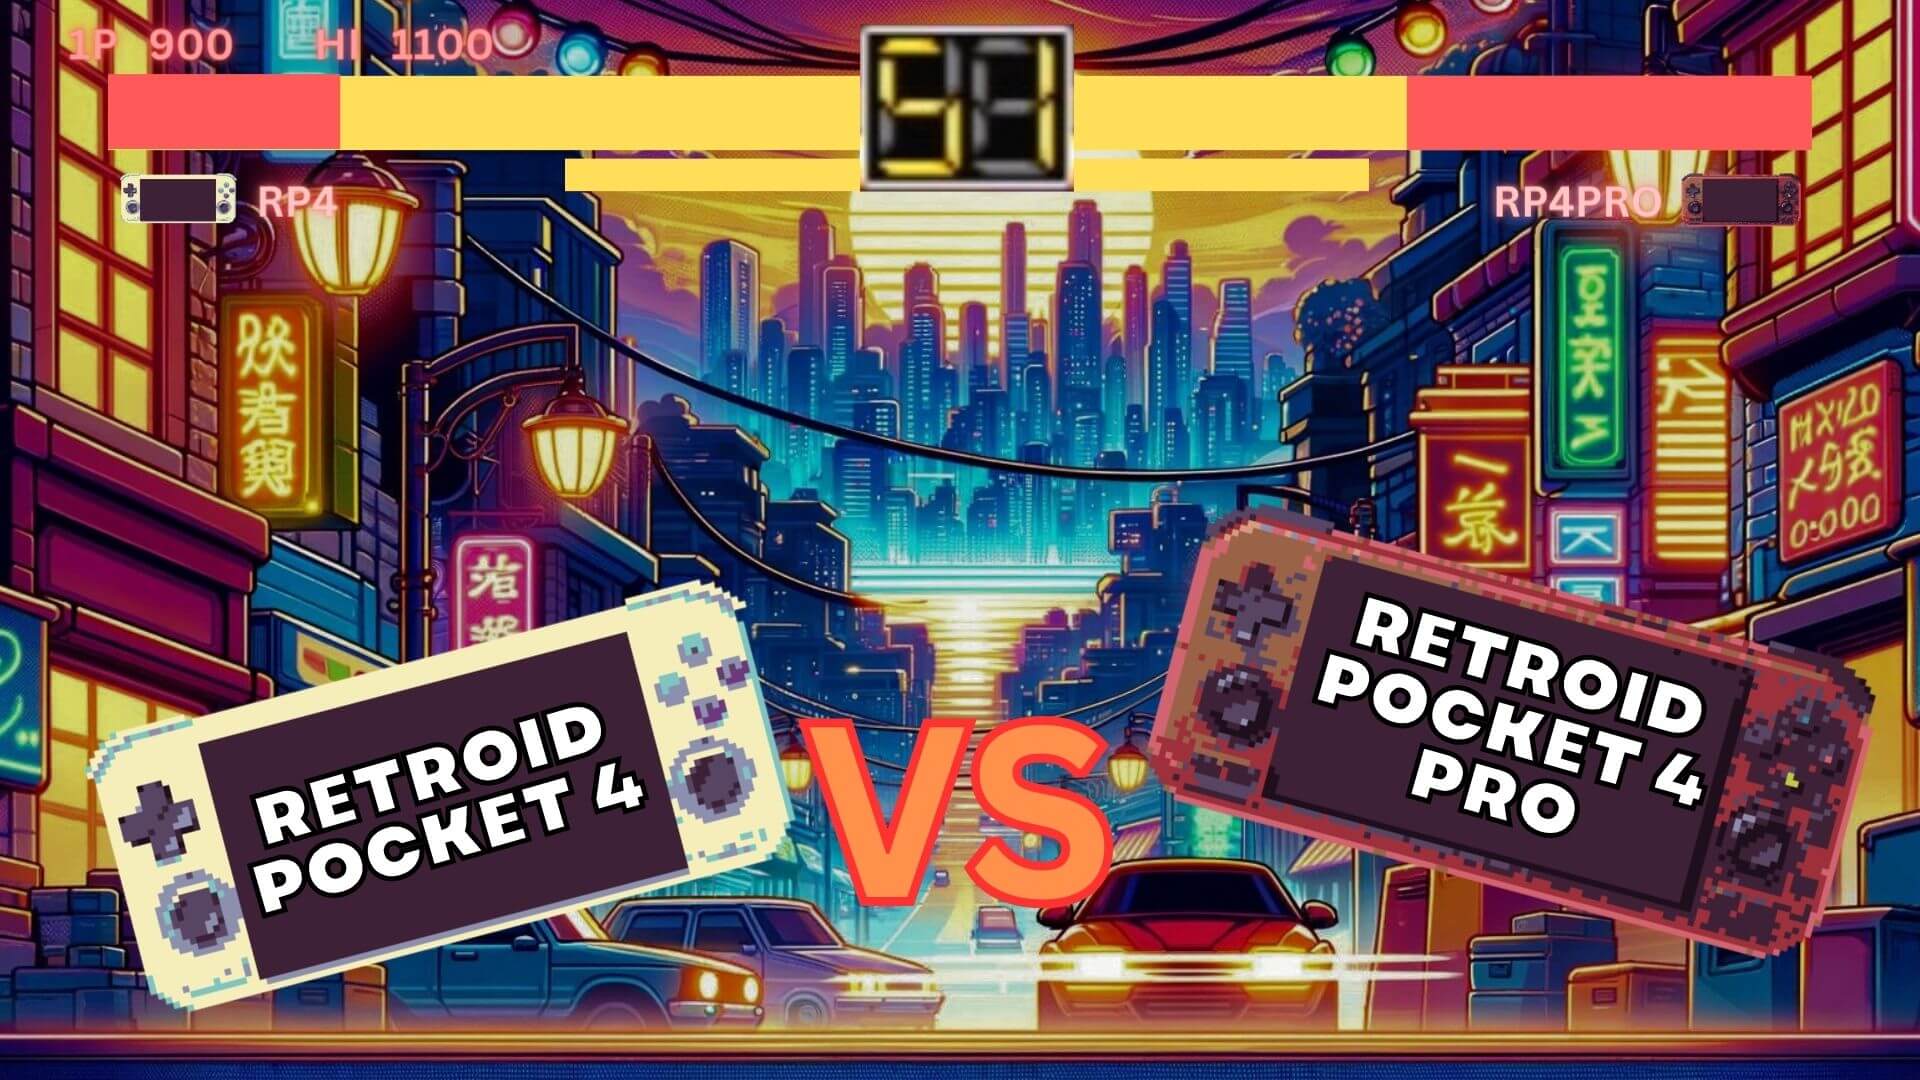 Retroid Pocket 4 vs Retroid Pocket  4 PRO med video - Hvilken har den bedste pris i forhold til ydeevne?